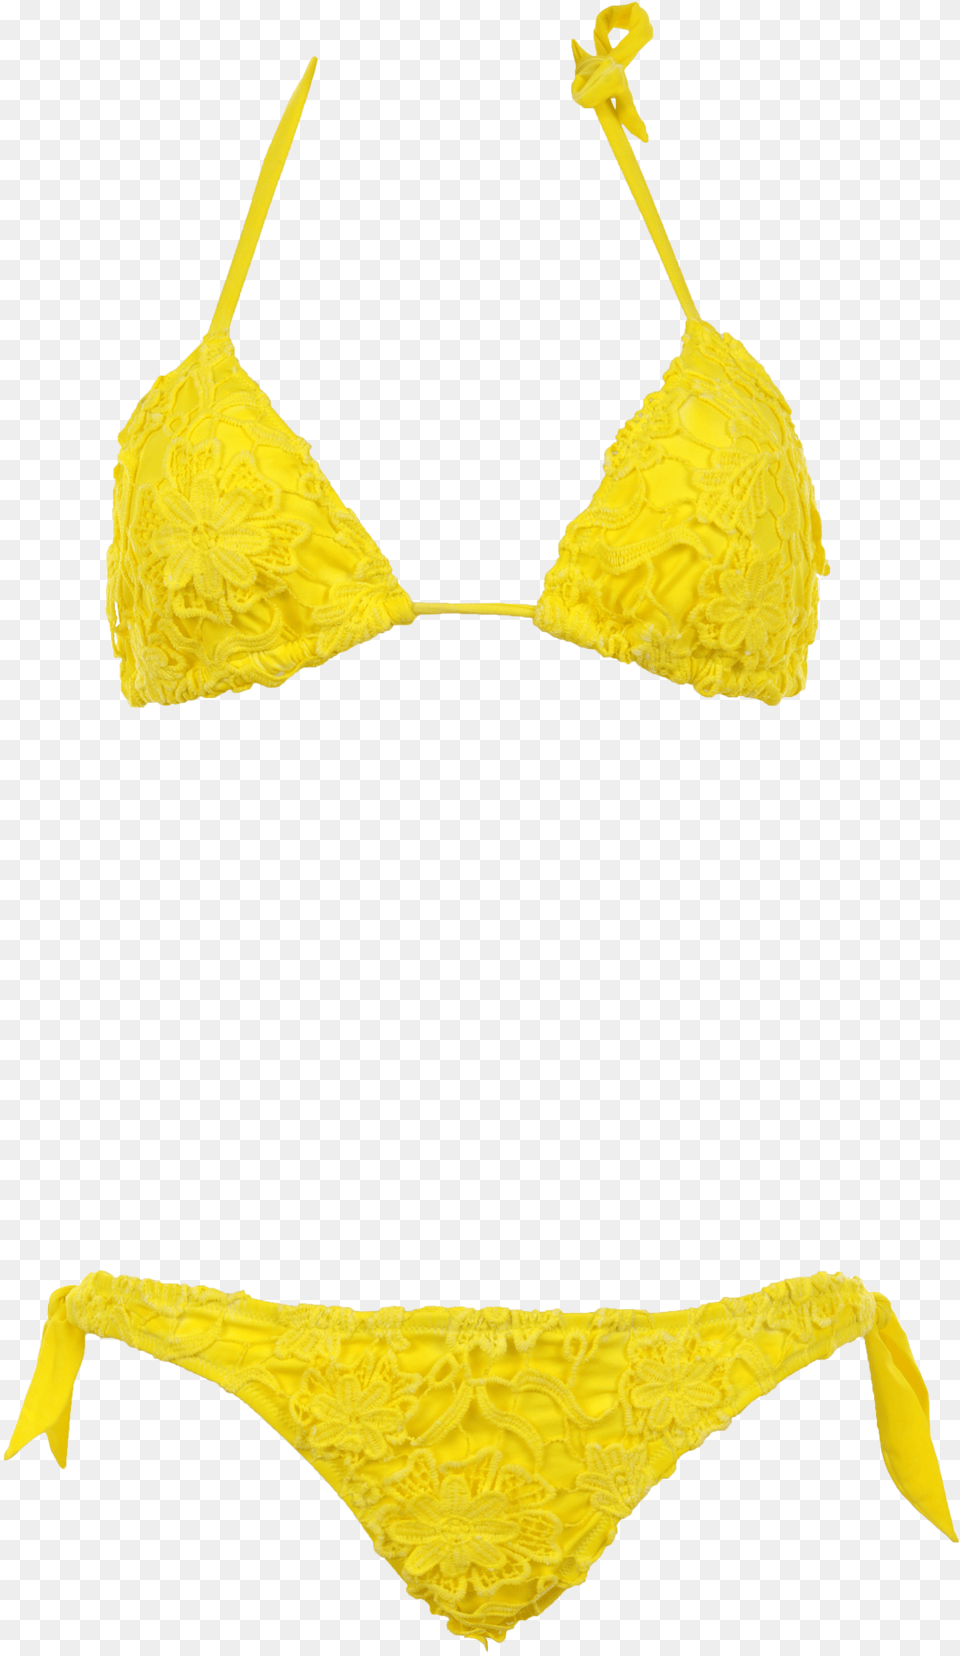 Padded Macram Lace Yellow Triangle Bikini With Removable, Clothing, Swimwear Png